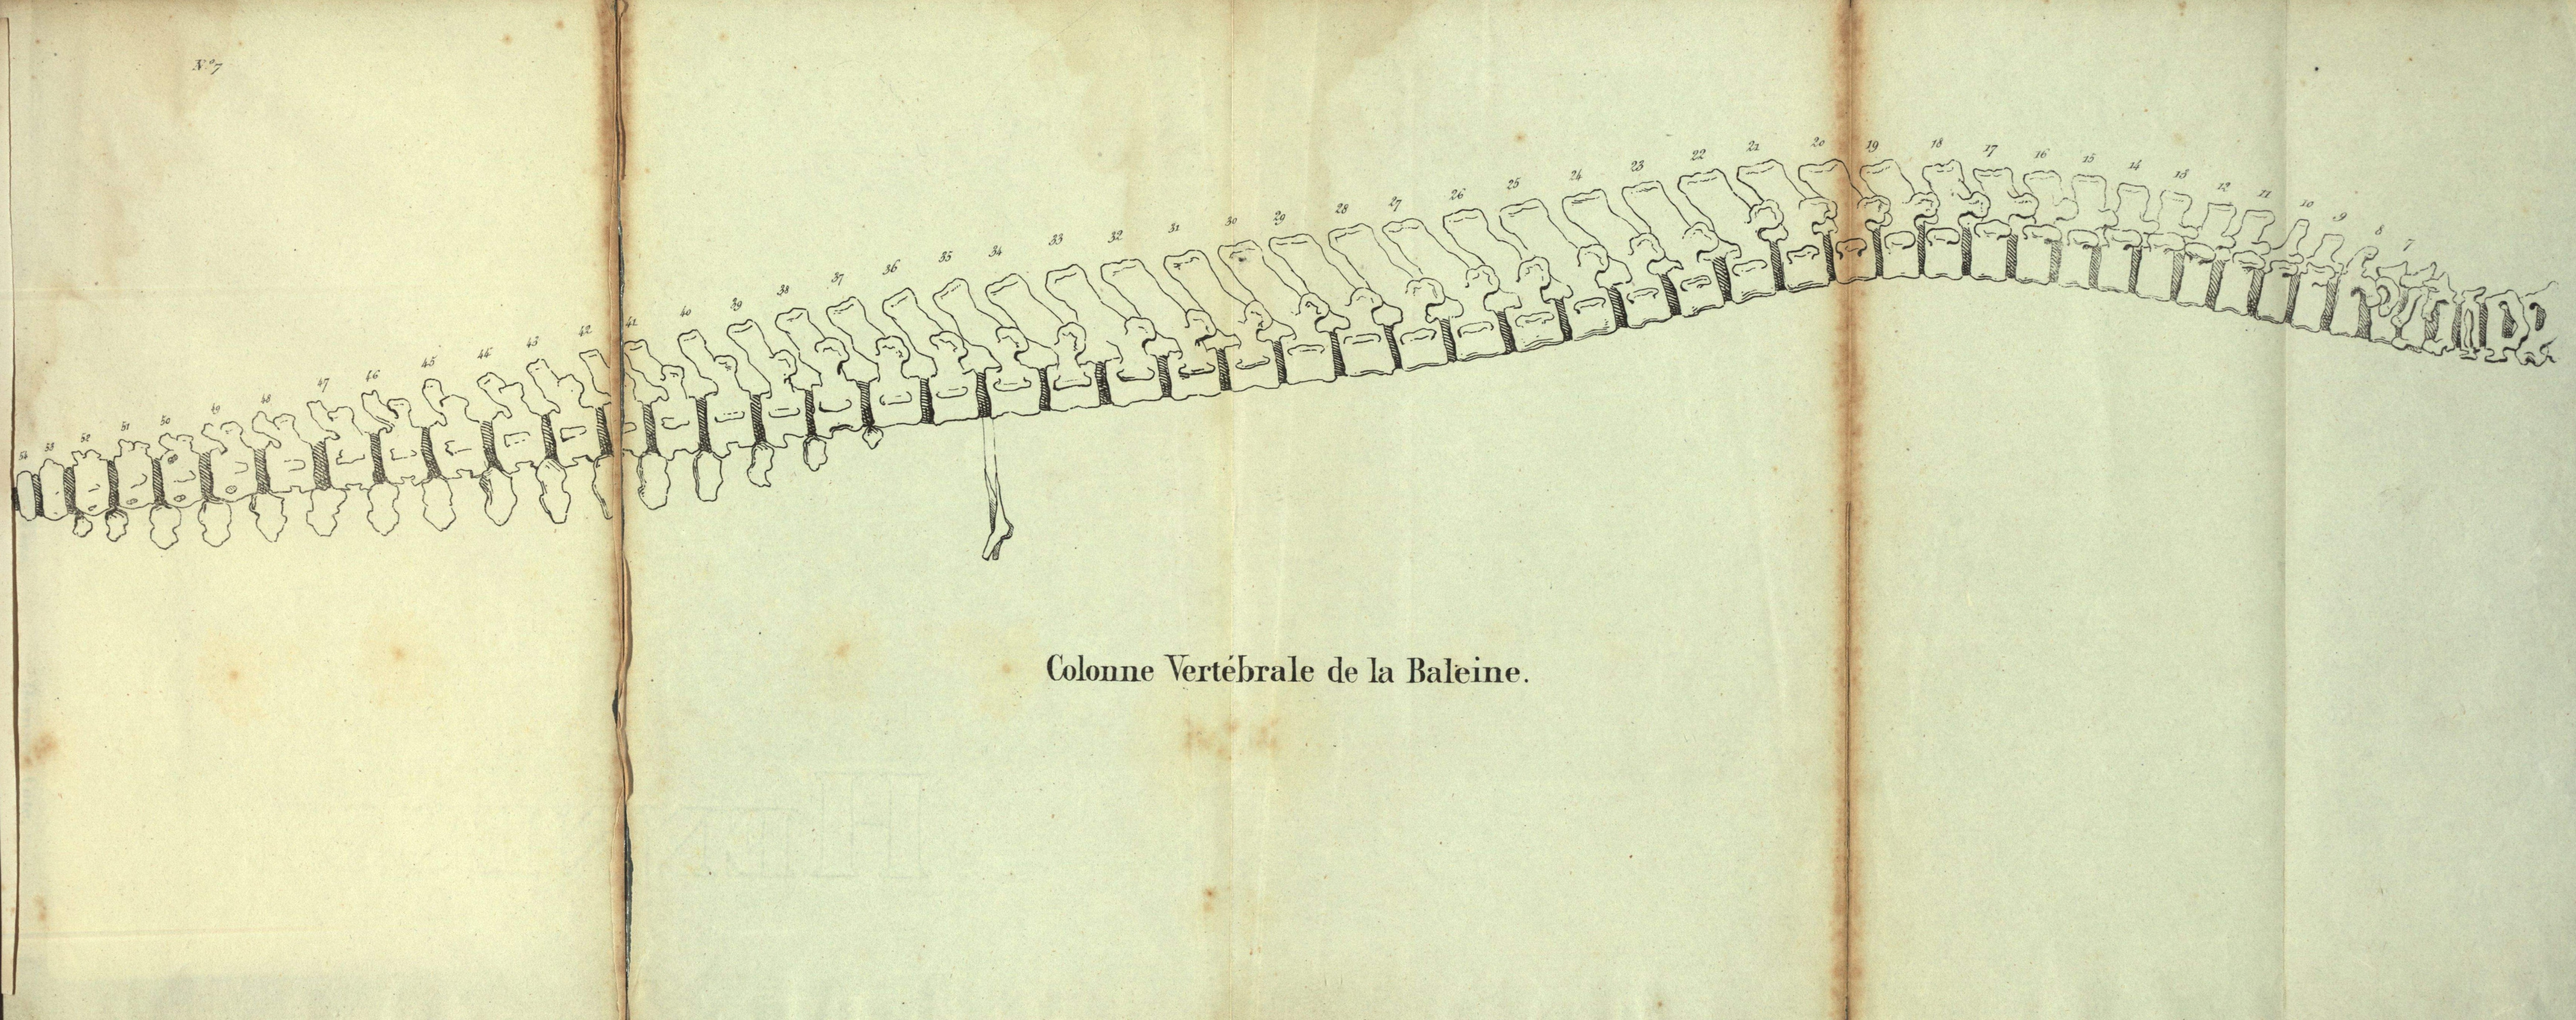 Dubar (1828, pl. 07)